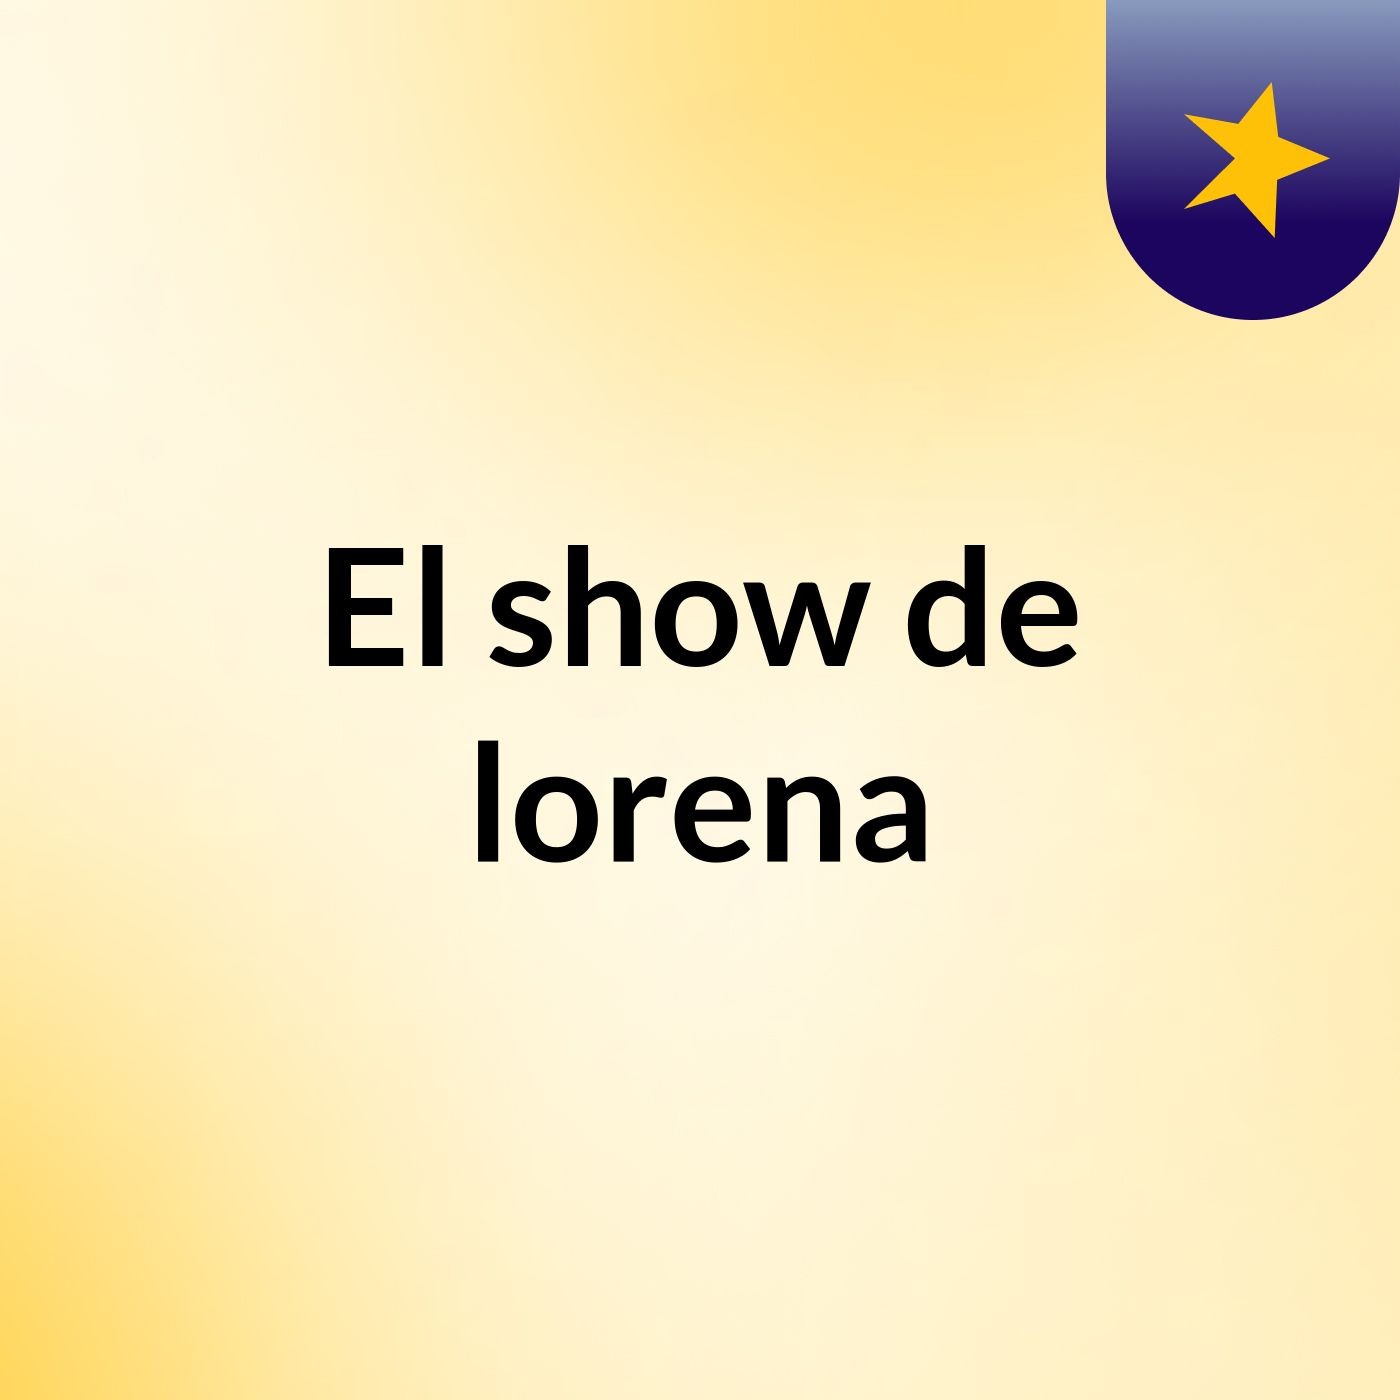 El show de lorena